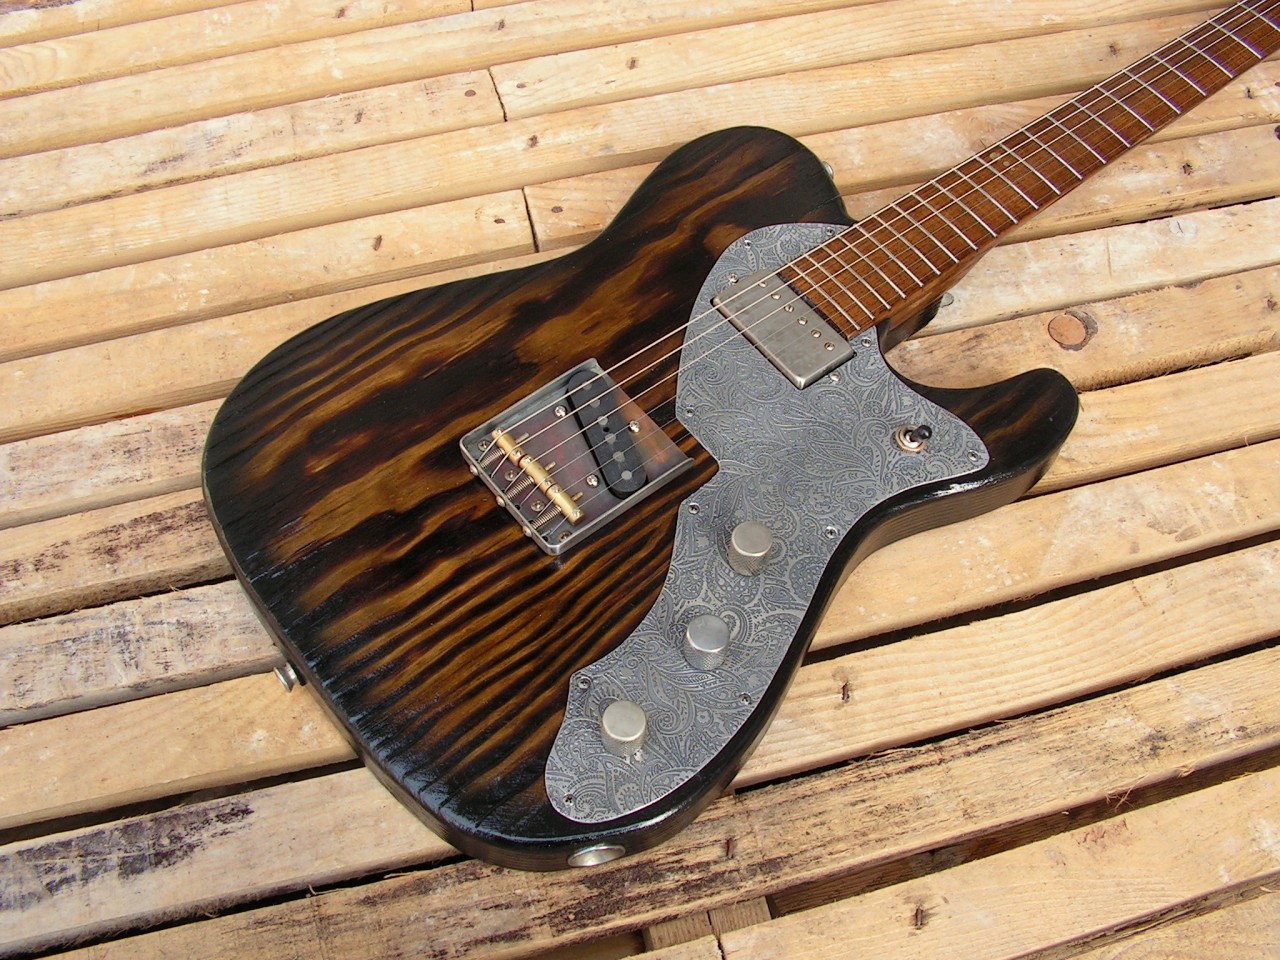 Body di chitarra modello Telecaster in pino con humbucker al manico